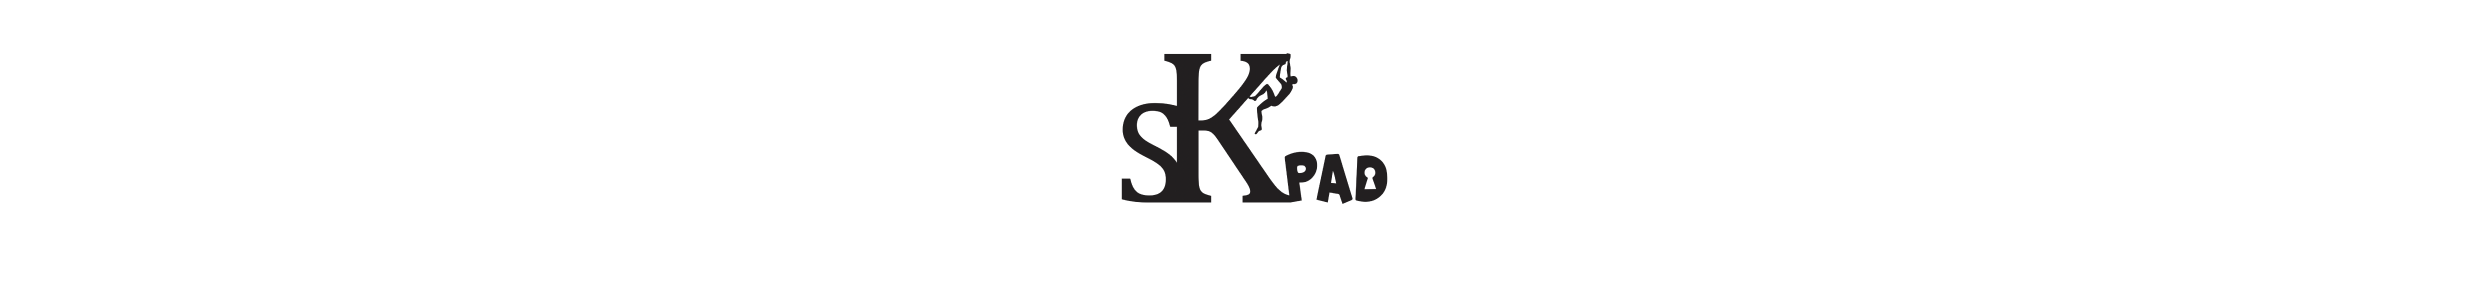 SK-PAD logo